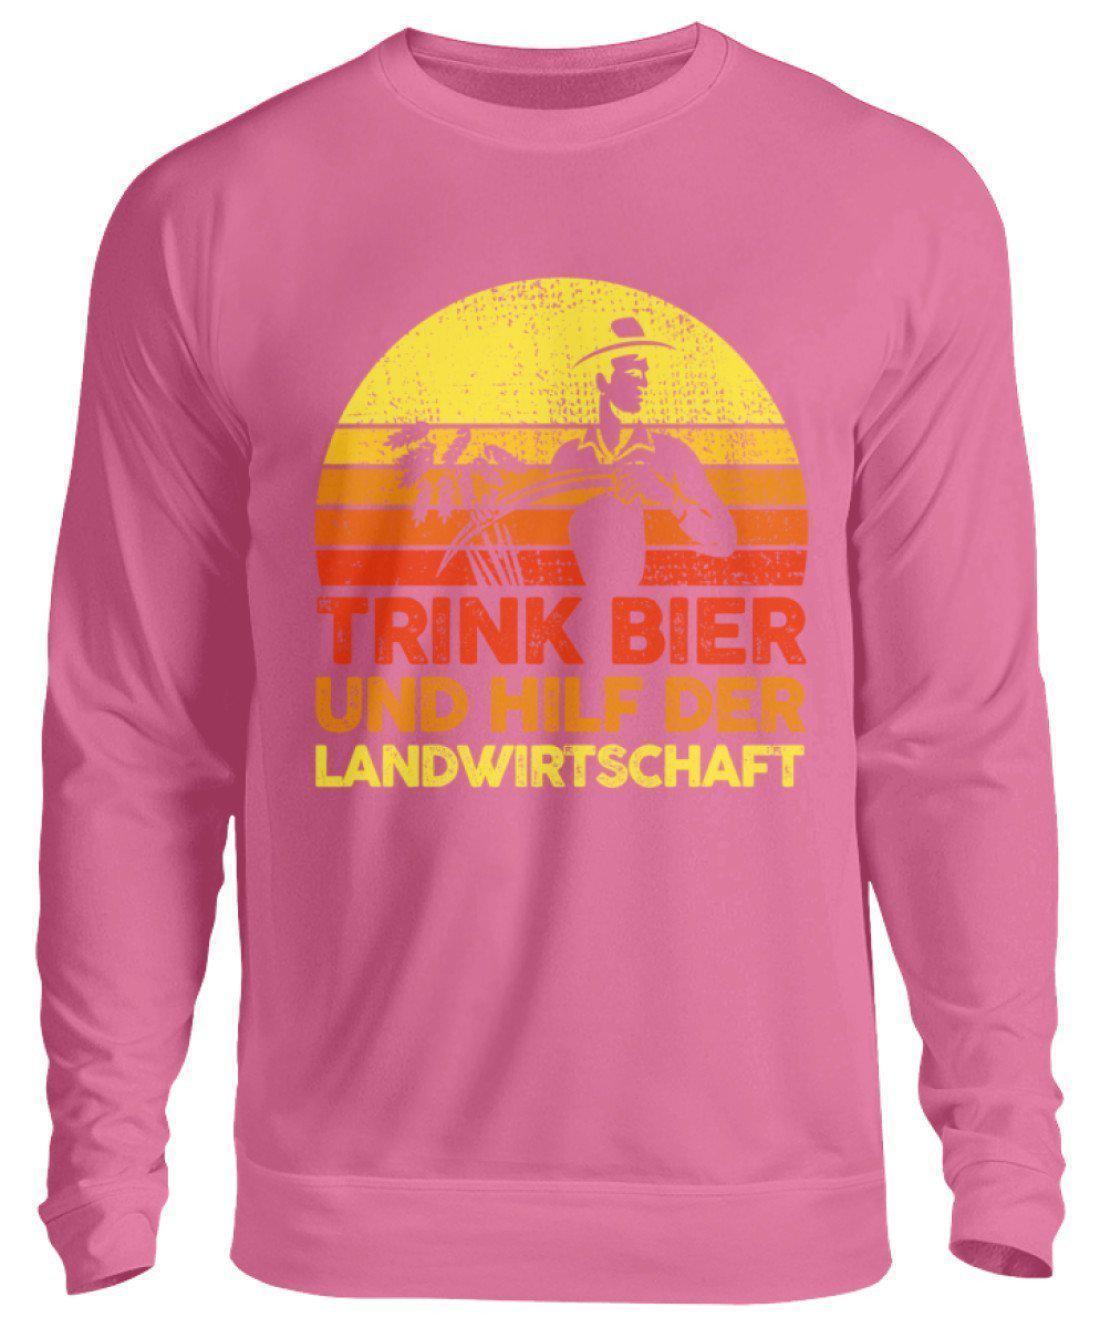 Trink Bier hilf Landwirtschaft Retro · Unisex Sweatshirt Pullover-Unisex Sweatshirt-Candyfloss Pink-S-Agrarstarz